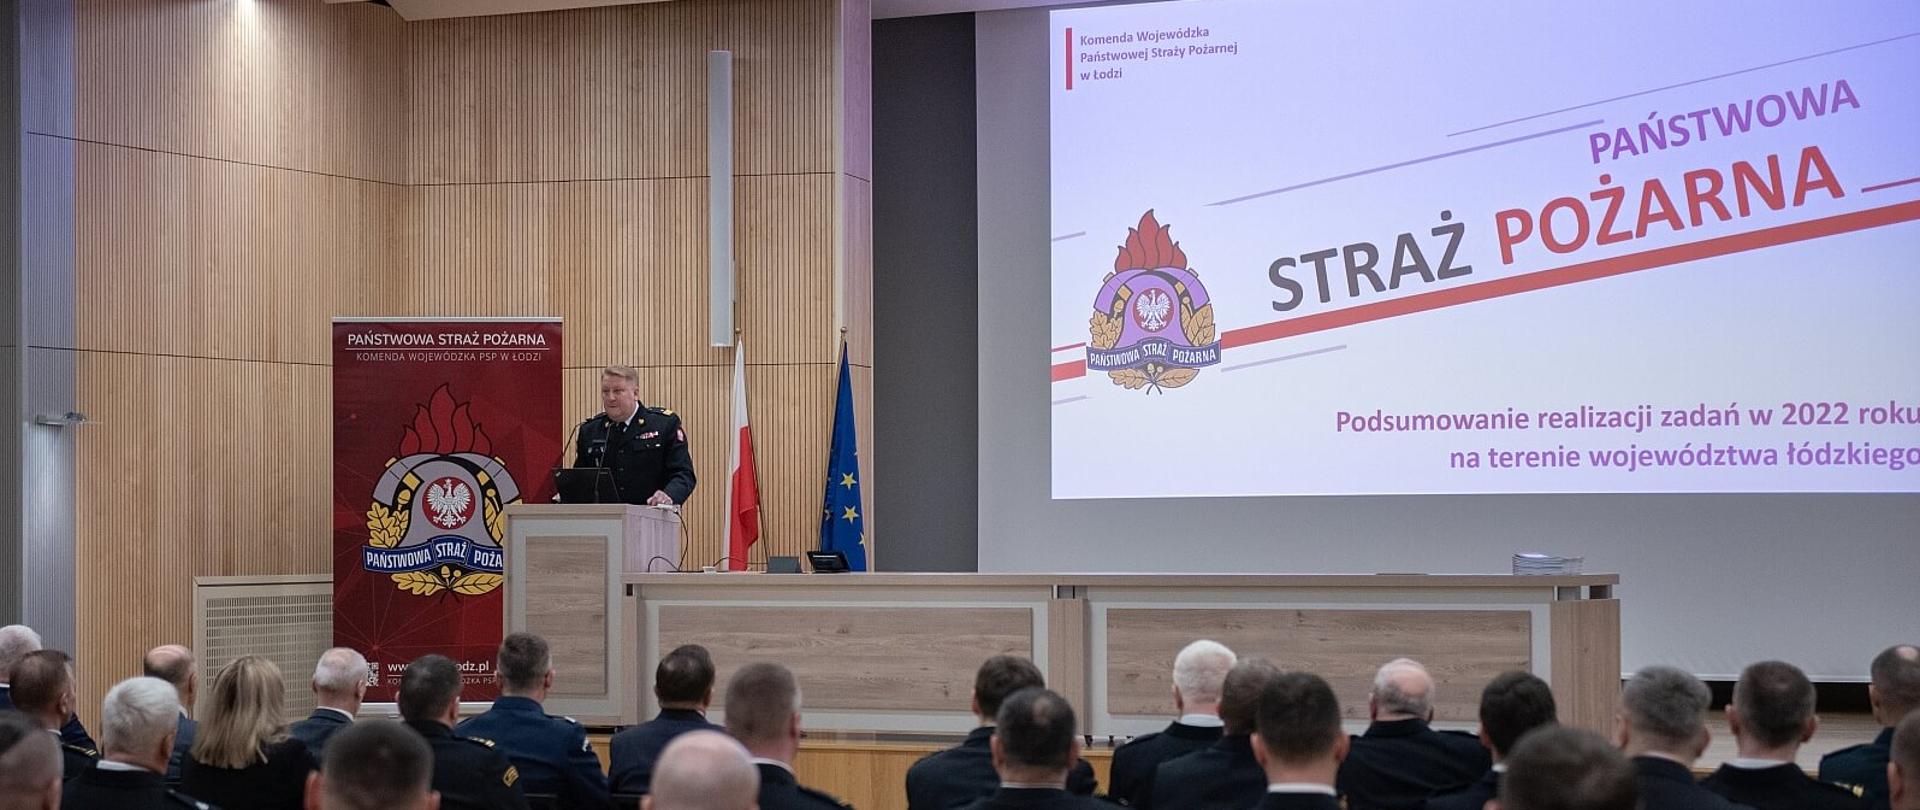 Narada roczna podsumowująca działalność Państwowej Straży Pożarnej województwa łódzkiego w 2022 roku